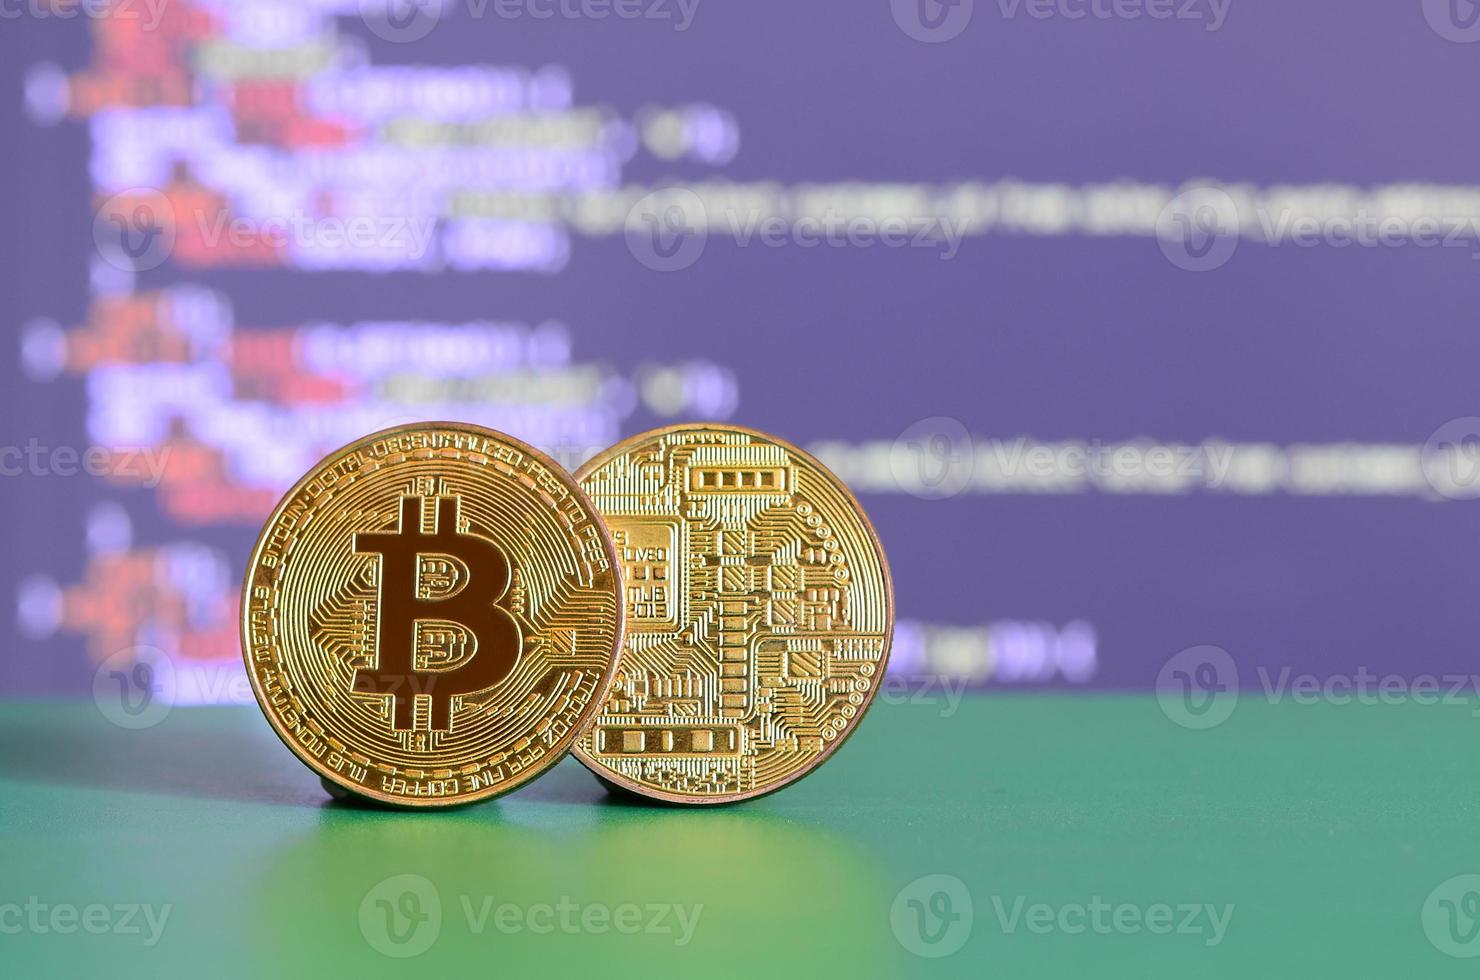 dois bitcoins de ouro estão na superfície verde no fundo da tela, que mostra o processo de mineração da moeda criptográfica foto